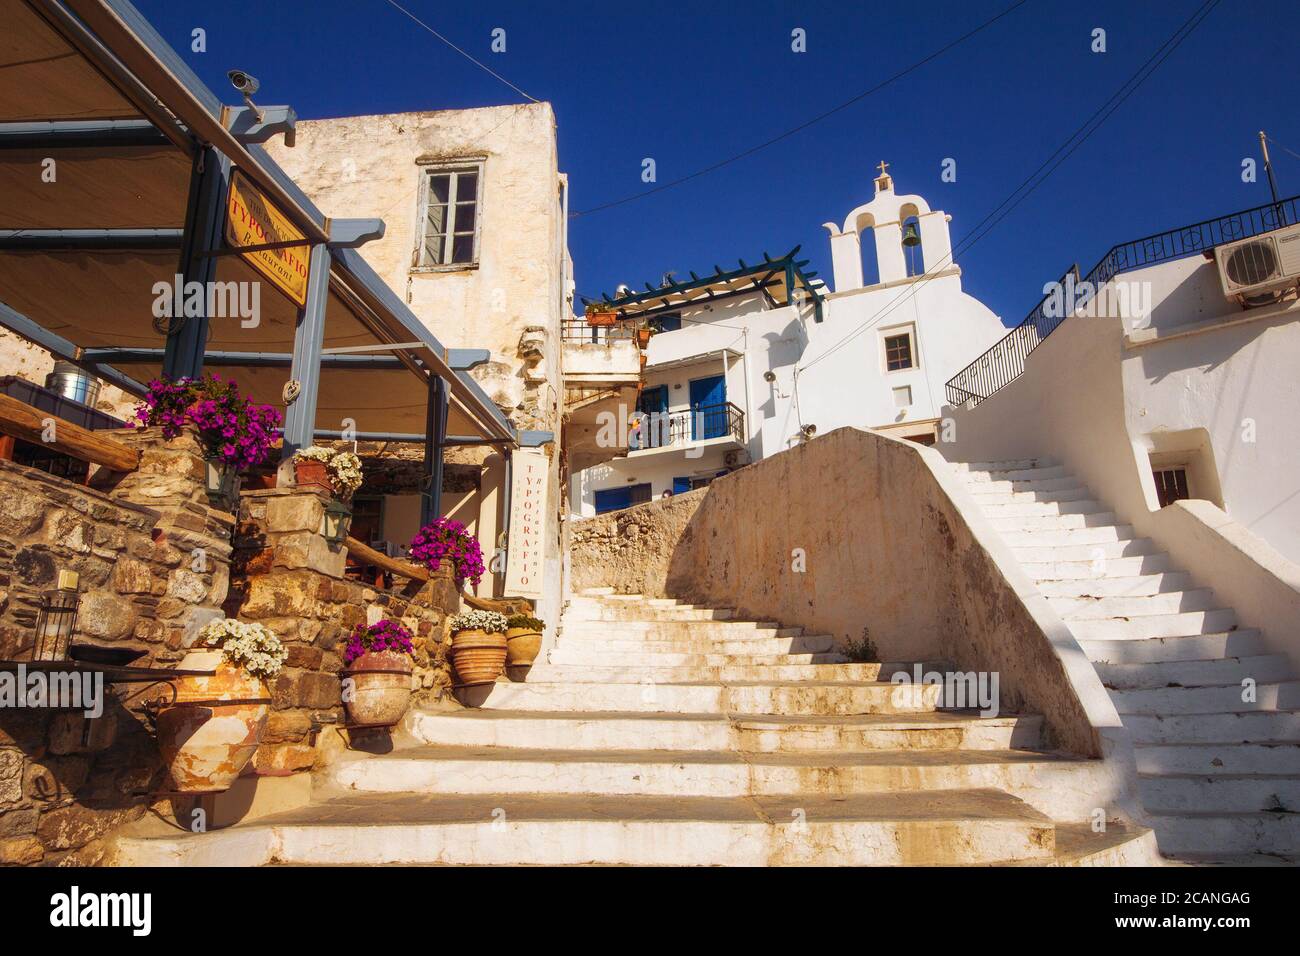 23.06. 2016 - traditionelle Architektur in der Altstadt von Naxos, Griechenland Stockfoto